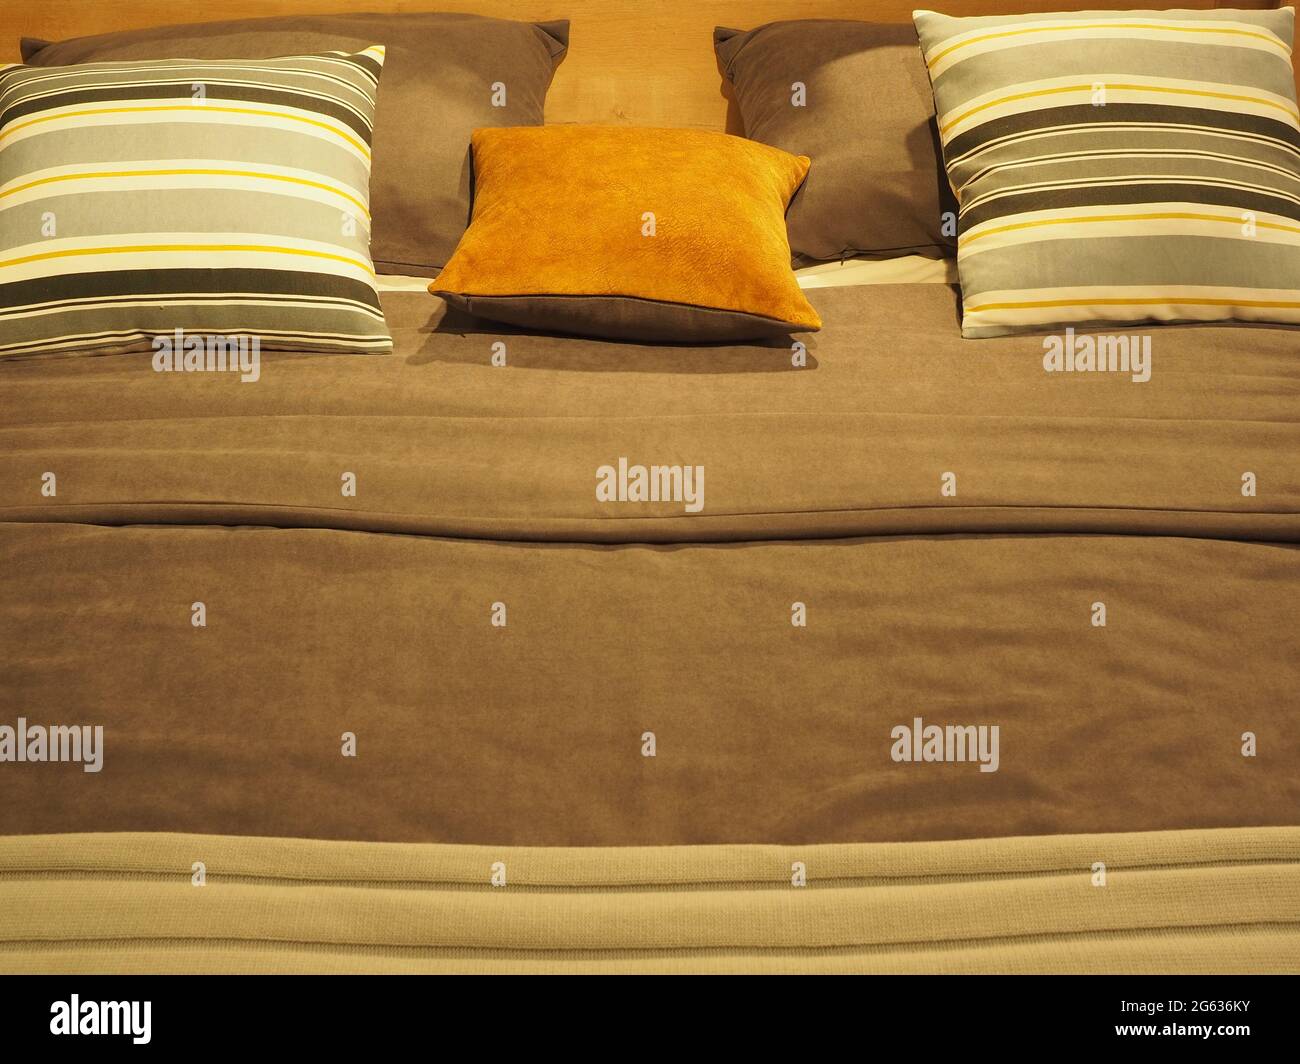 Bettfragment mit gestreiften und monochromen quadratischen Kissen und einer Decke in graubraunen Farbtönen Stockfoto